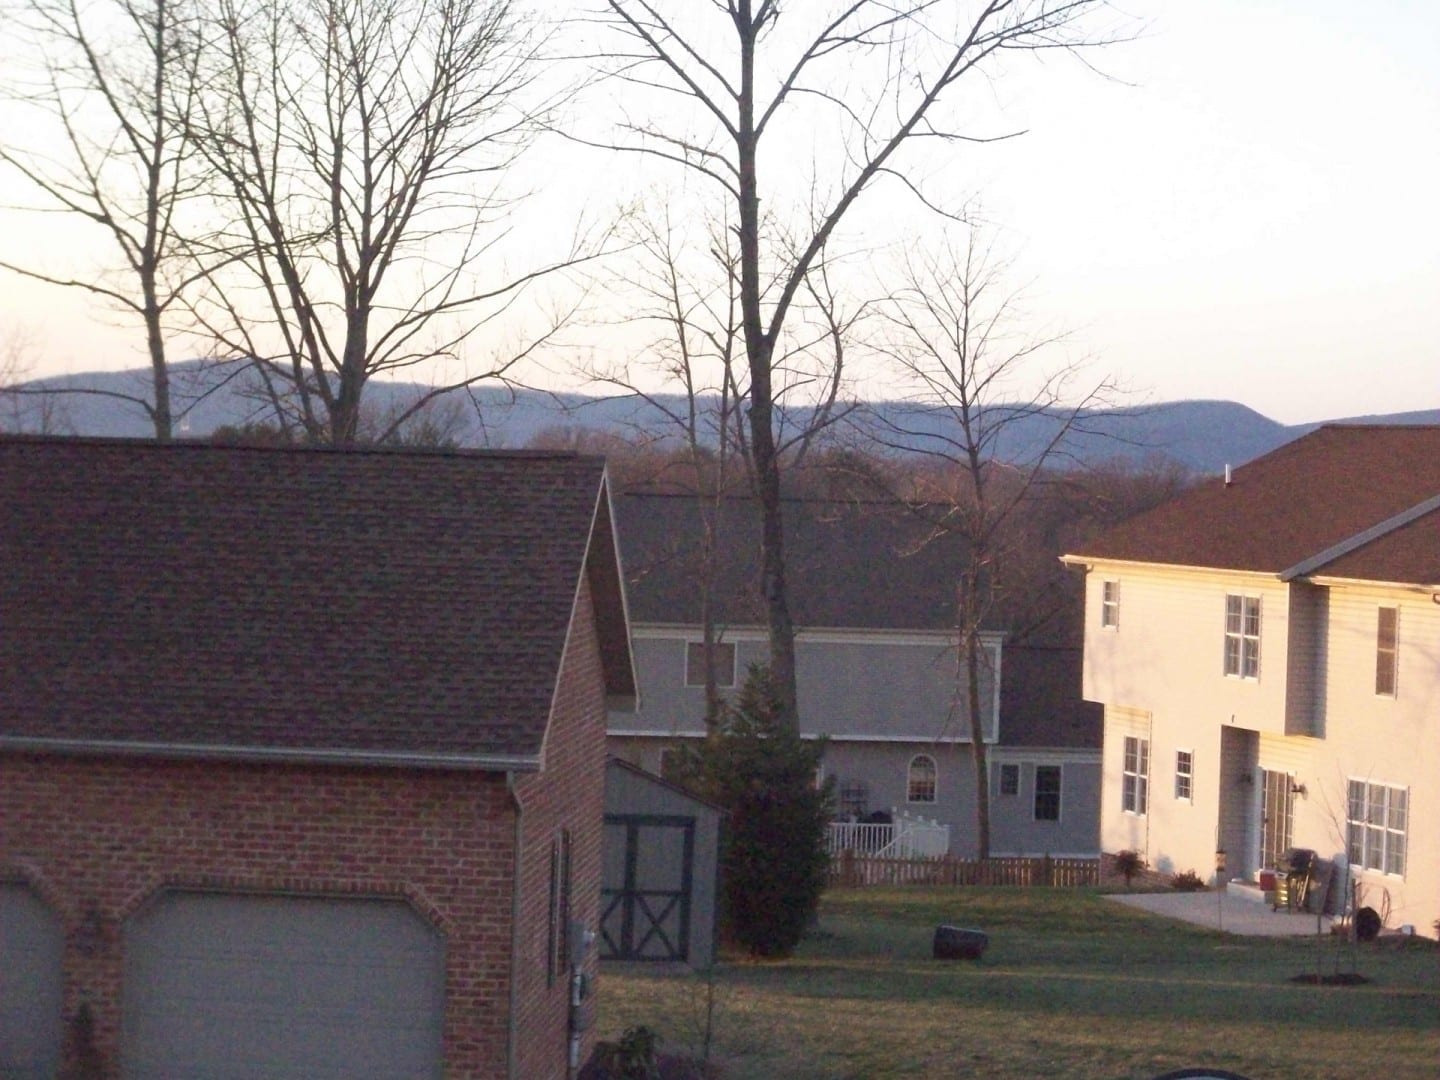 Vista de las montañas desde un suburbio de Hagerstown en un hermoso día de enero. Hagerstown MD Estados Unidos